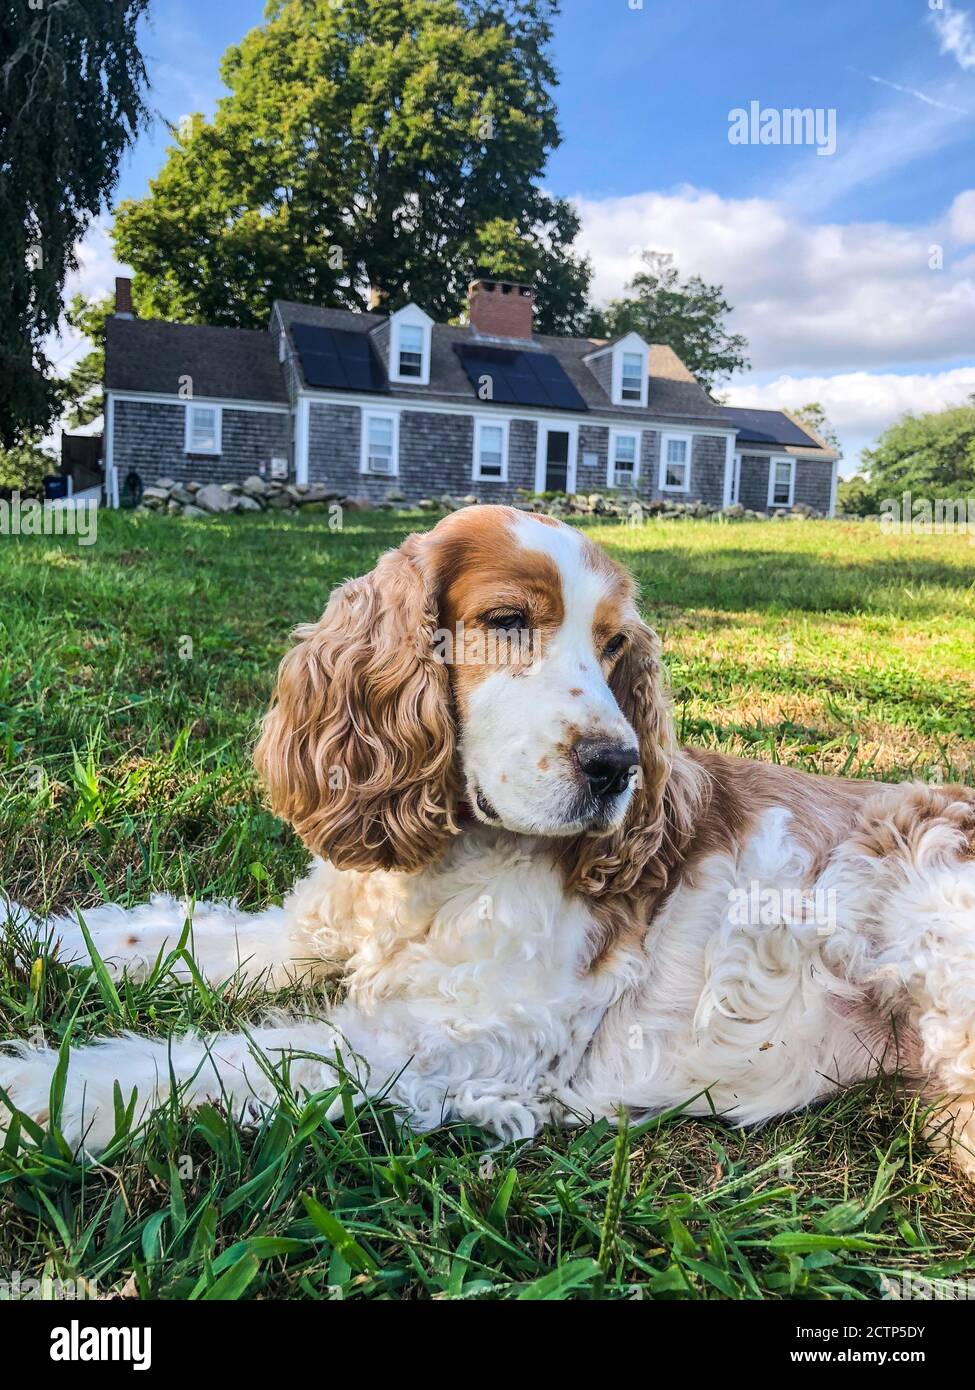 Un perro con orejas floppy se relaja en la hierba frente a una casa de guijarros cerca del océano. Foto de stock